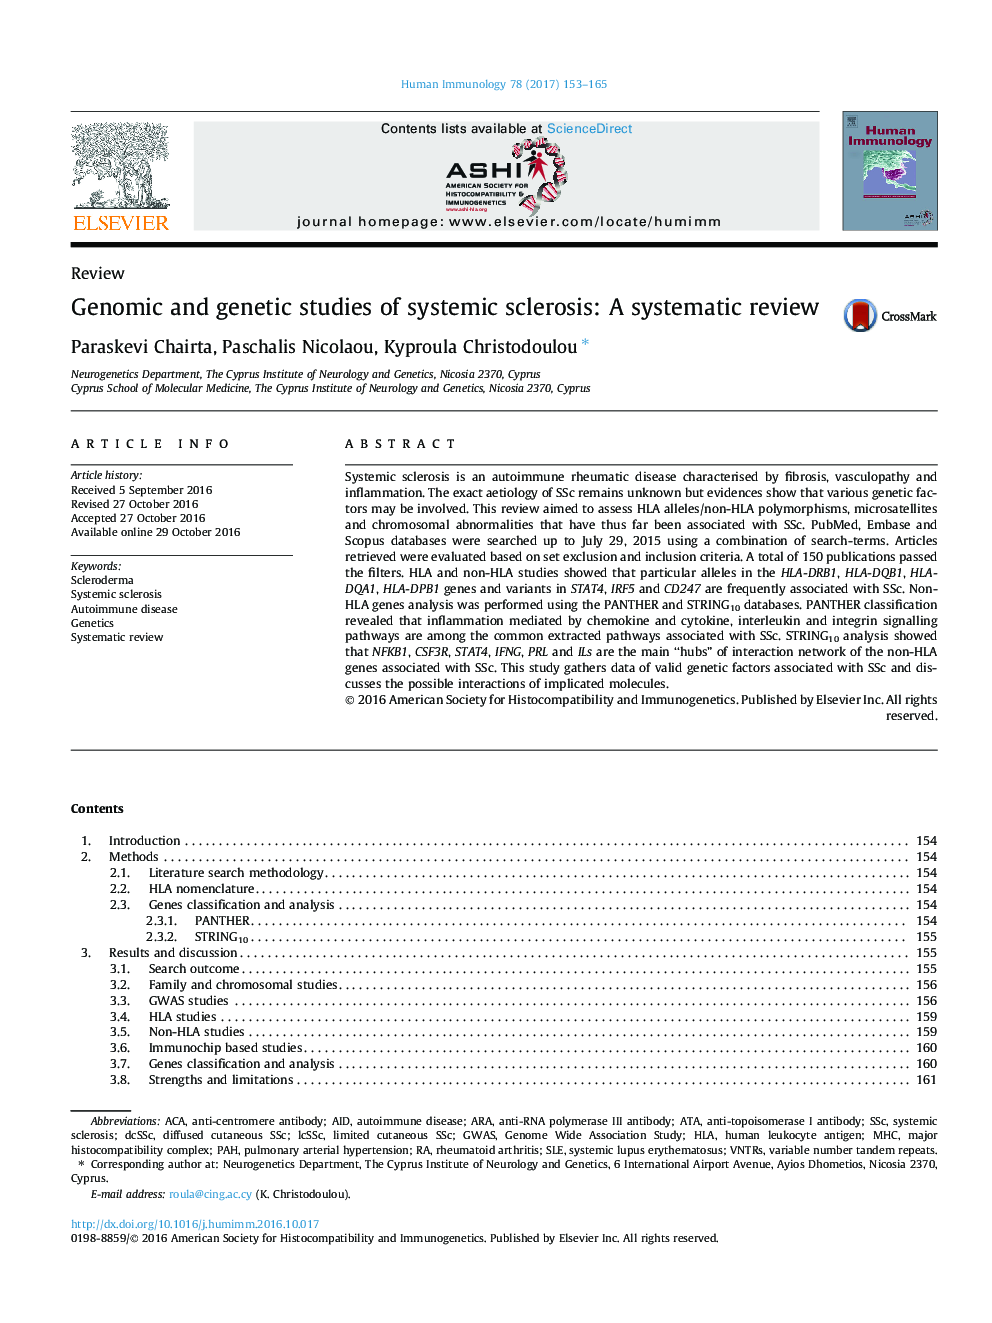 مطالعات ژنتیک و ژنتیک در مورد اسکلروز سیستمیک: بررسی سیستماتیک 